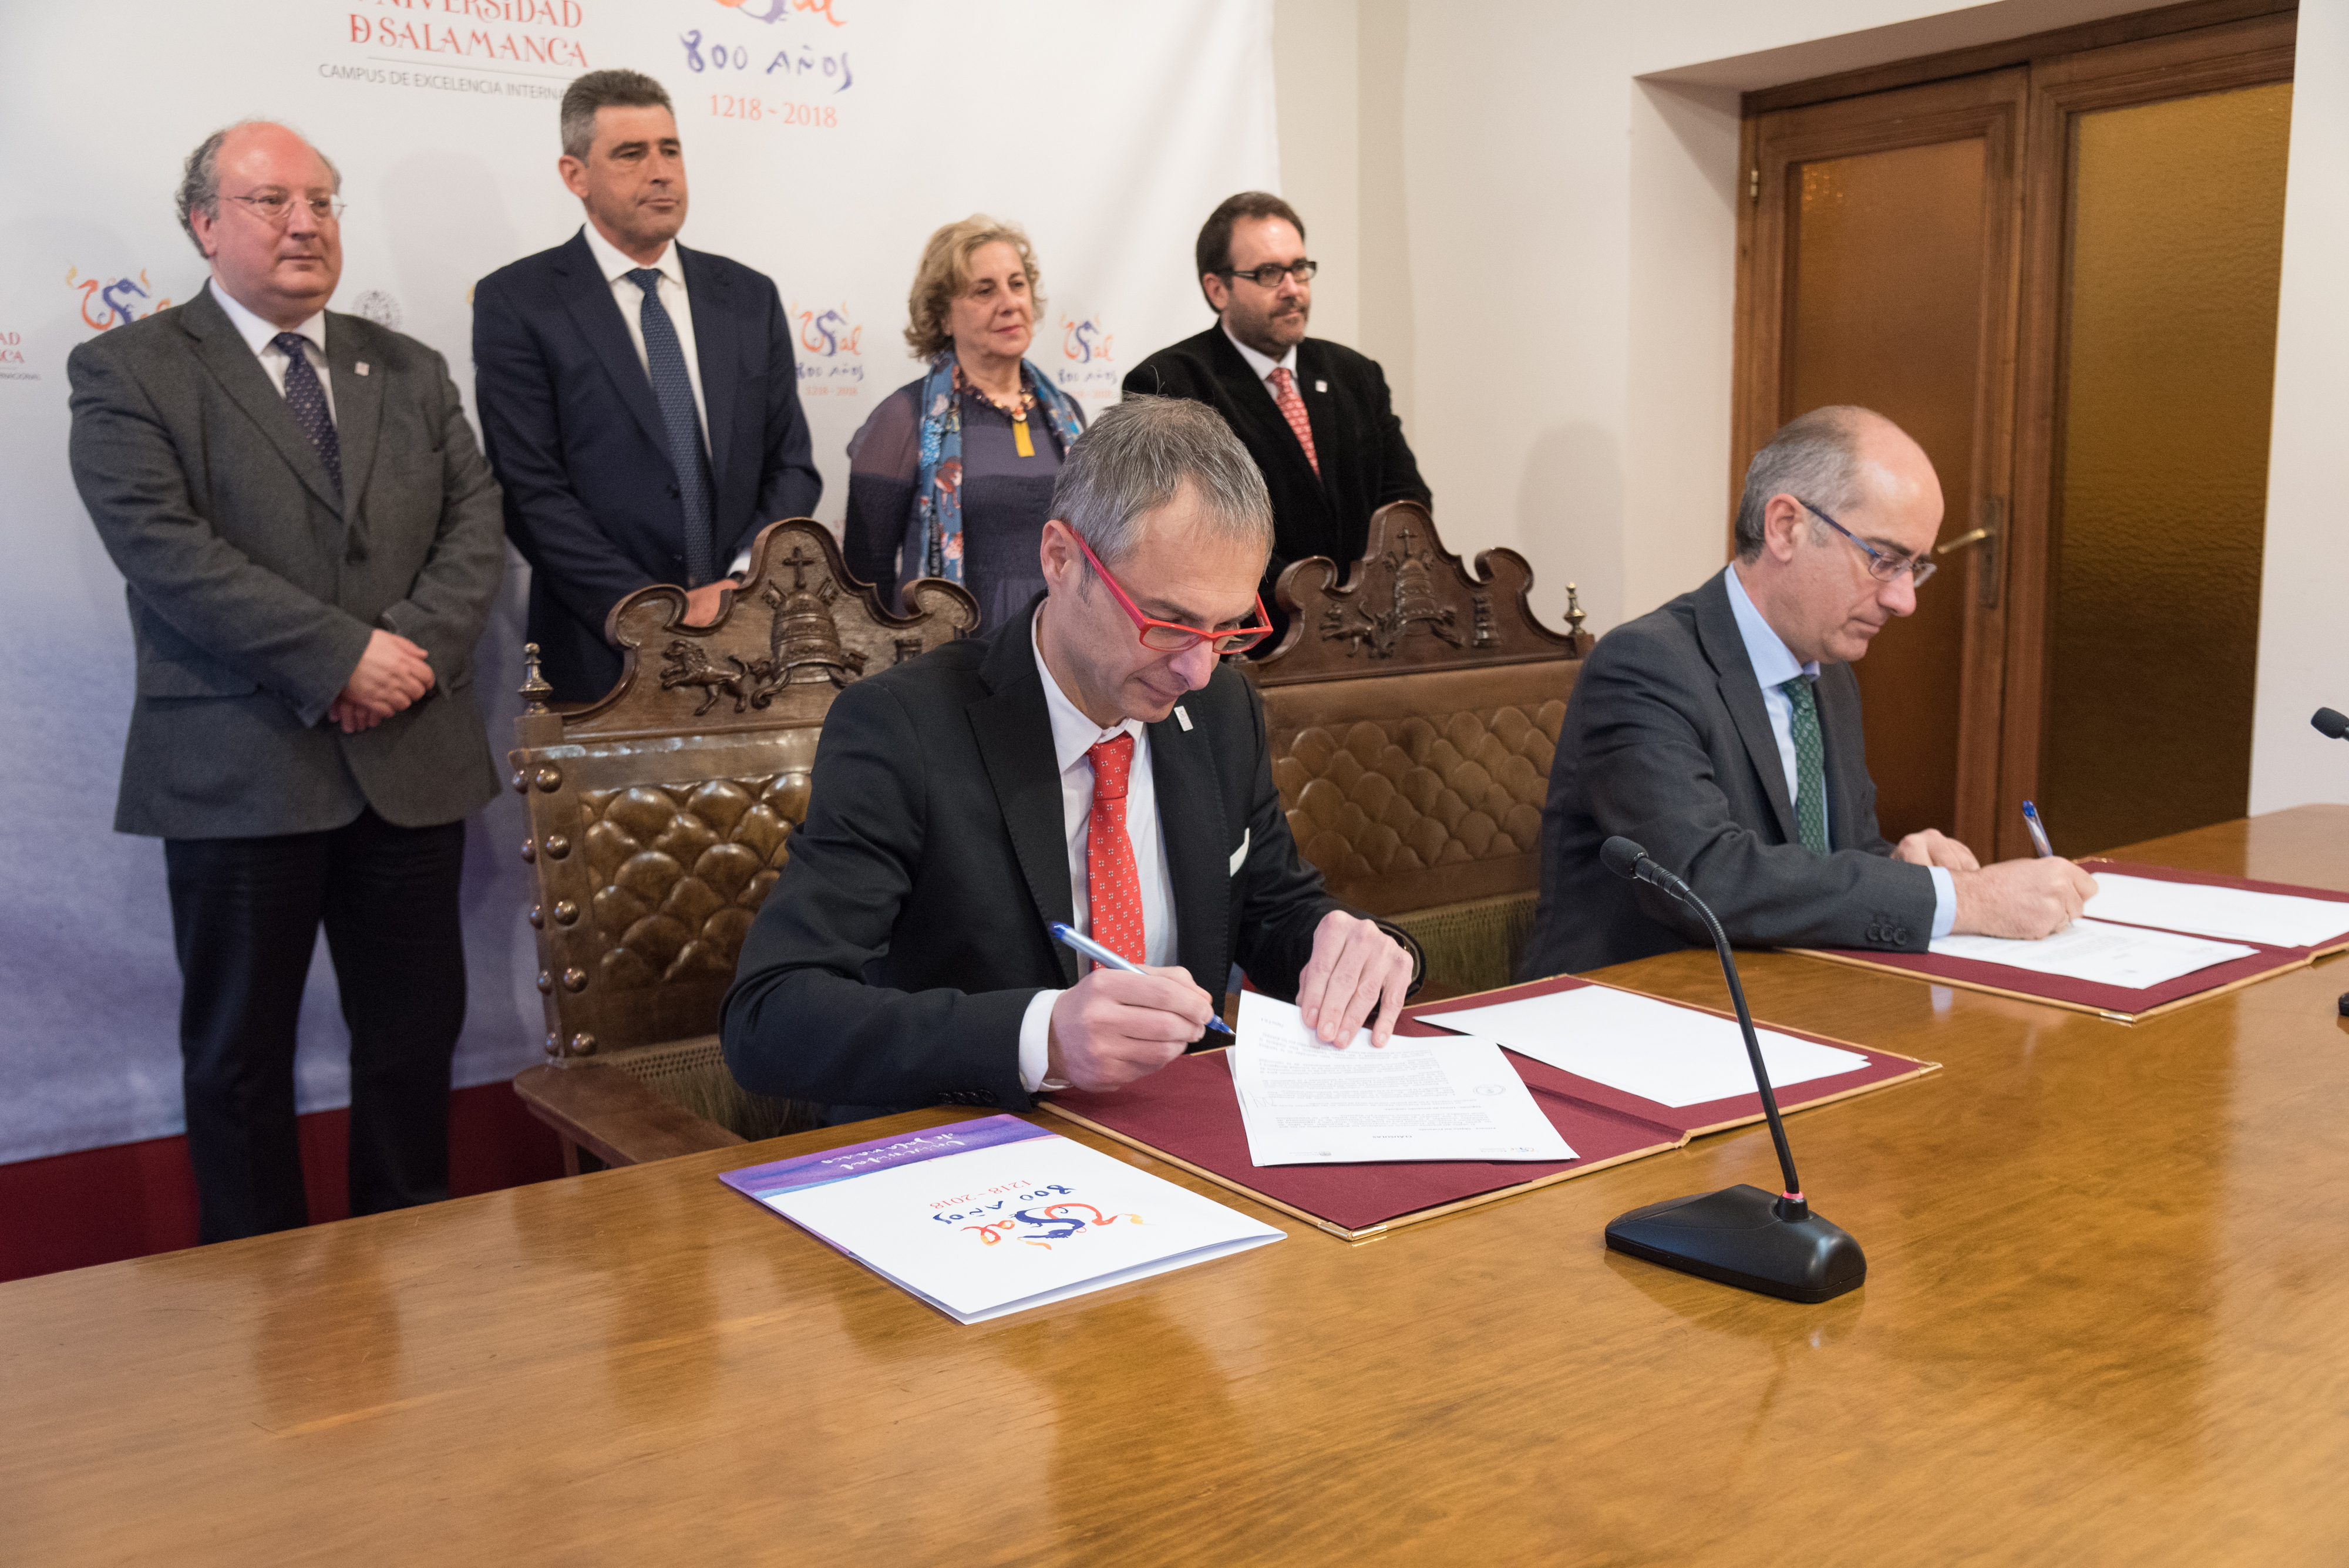 La Universidad de Salamanca y la Diputación Provincial suscriben un protocolo de colaboración con motivo del VIII Centenario 